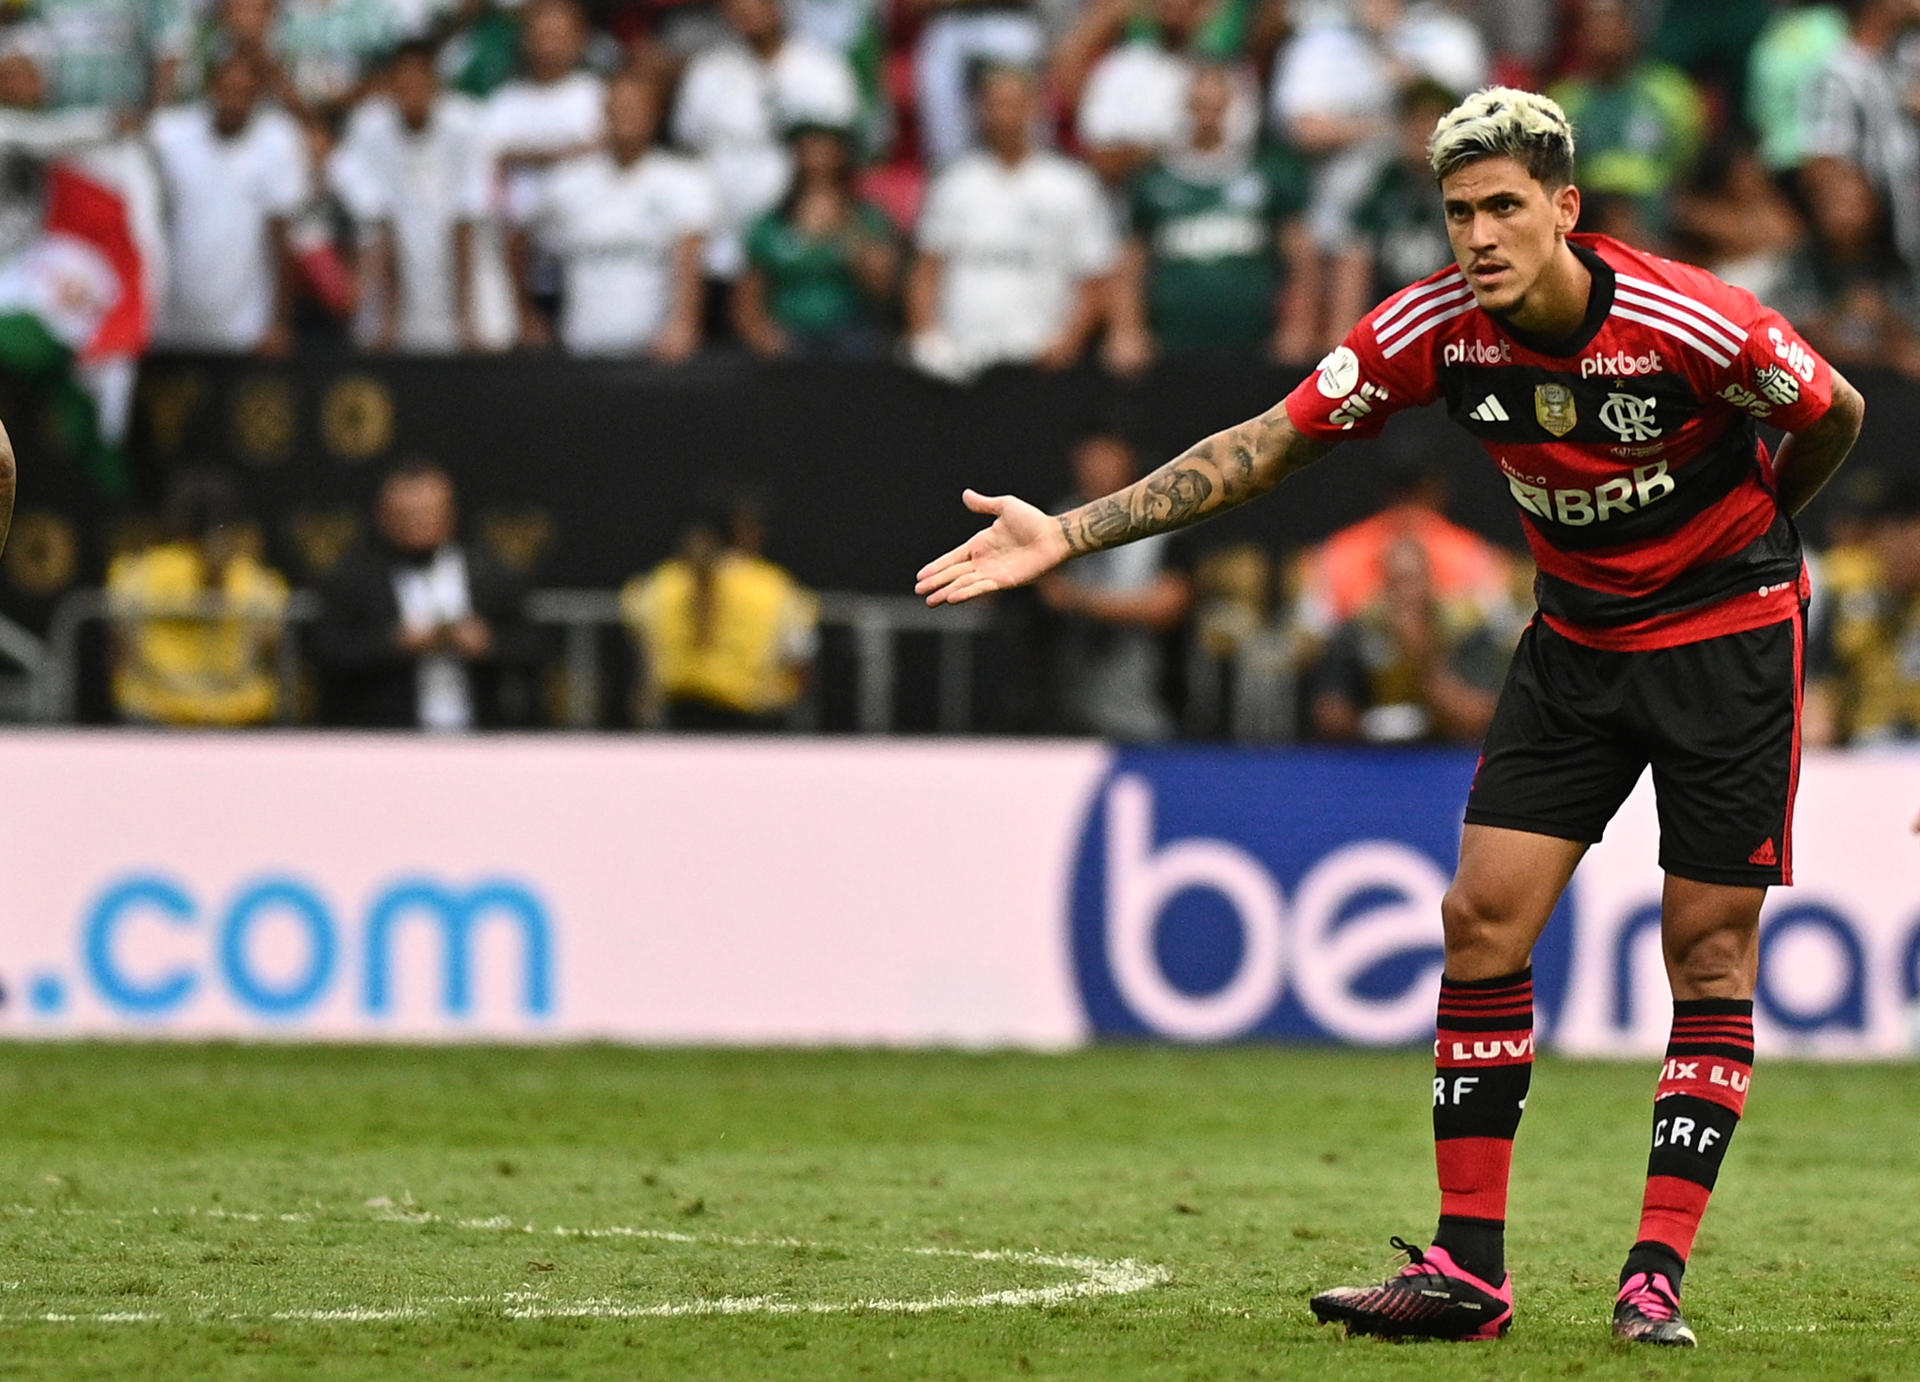 Pedro de Flamengo celebra un gol, en una fotografía de archivo. EFE/ Andre Borges